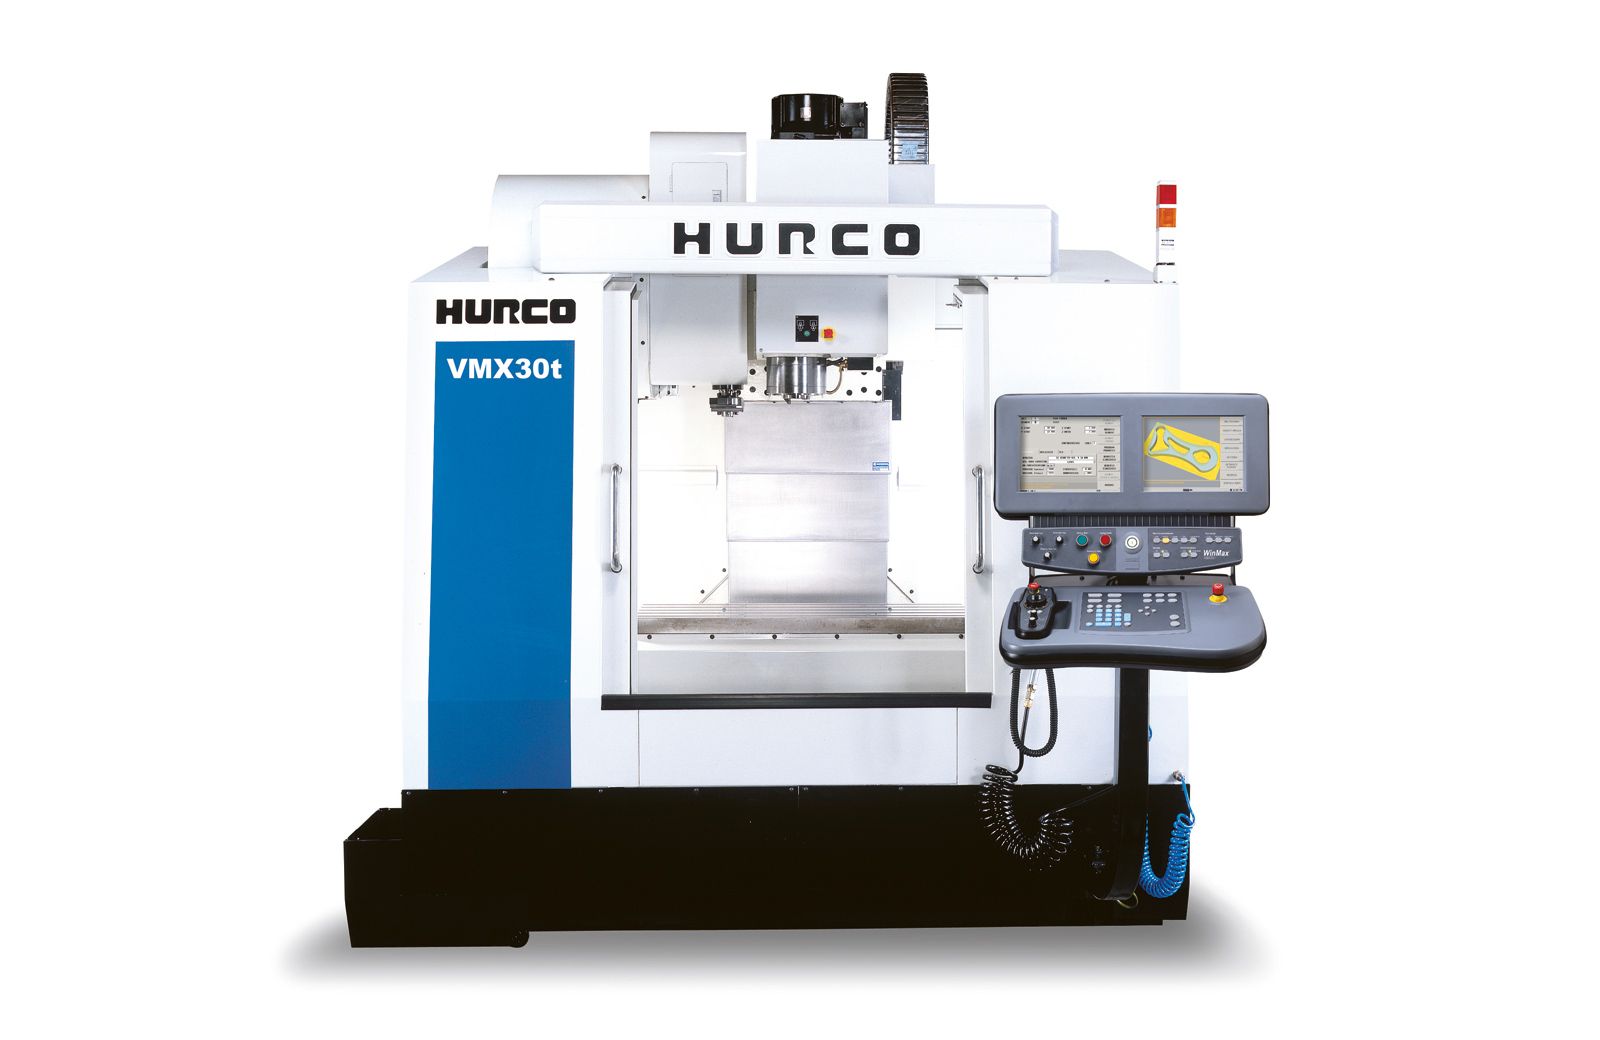 HURCO VMX30t